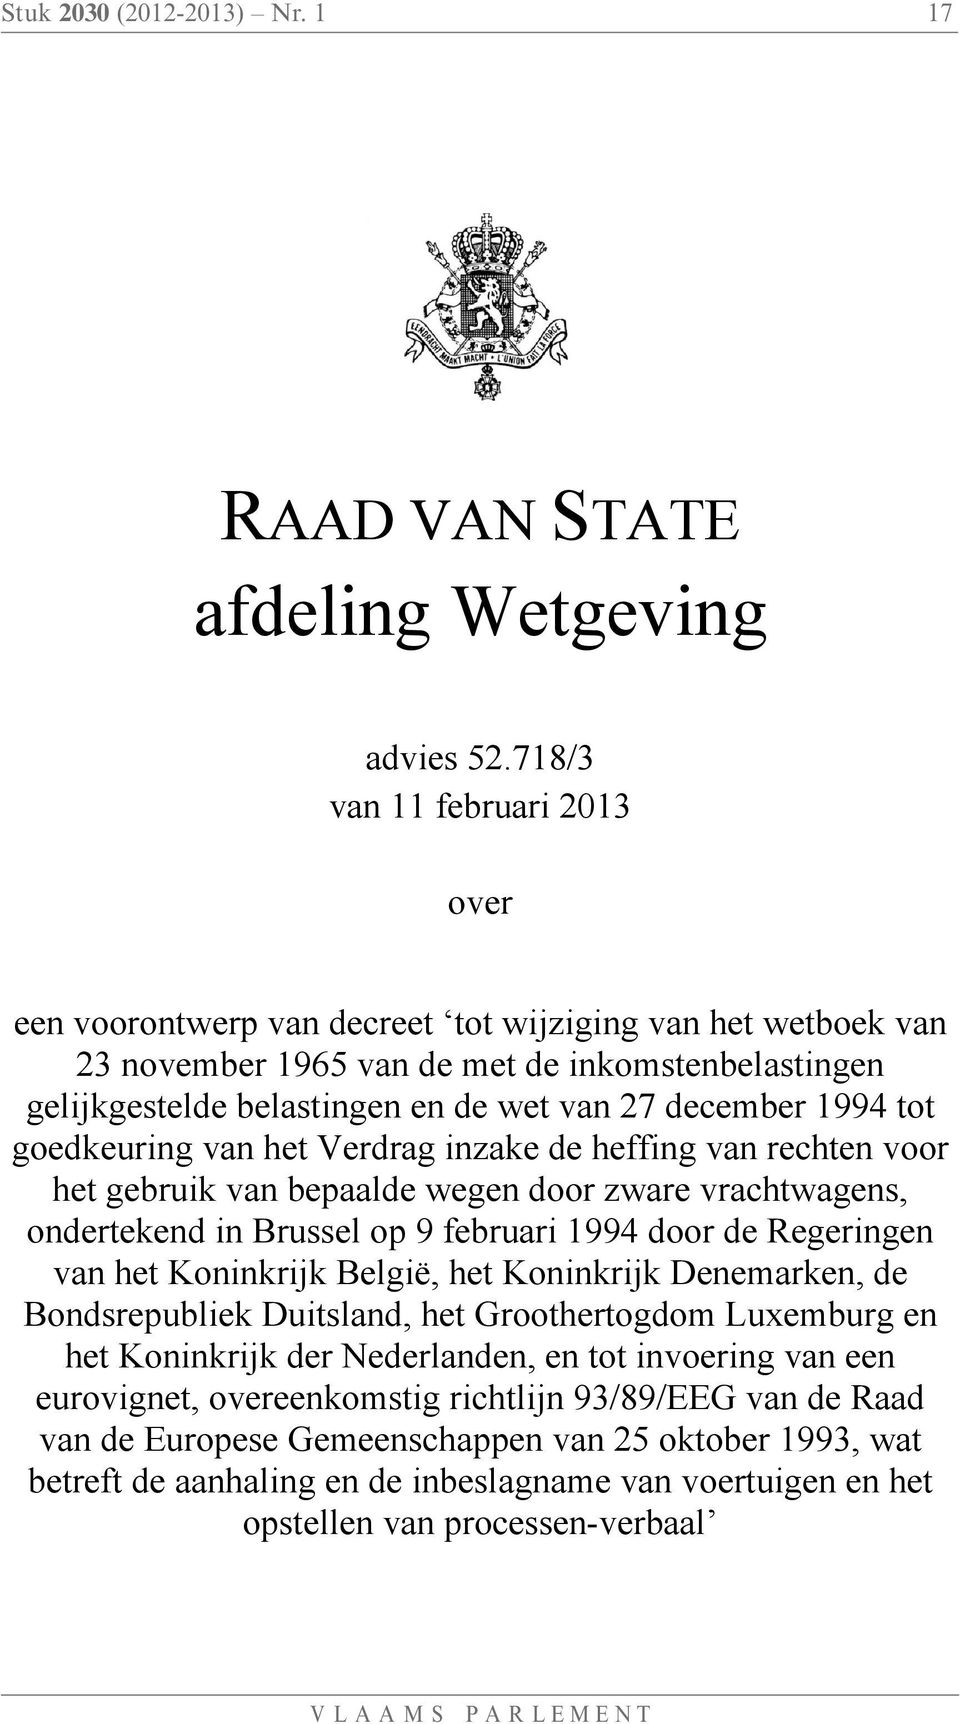 1994 tot goedkeuring van het Verdrag inzake de heffing van rechten voor het gebruik van bepaalde wegen door zware vrachtwagens, ondertekend in Brussel op 9 februari 1994 door de Regeringen van het